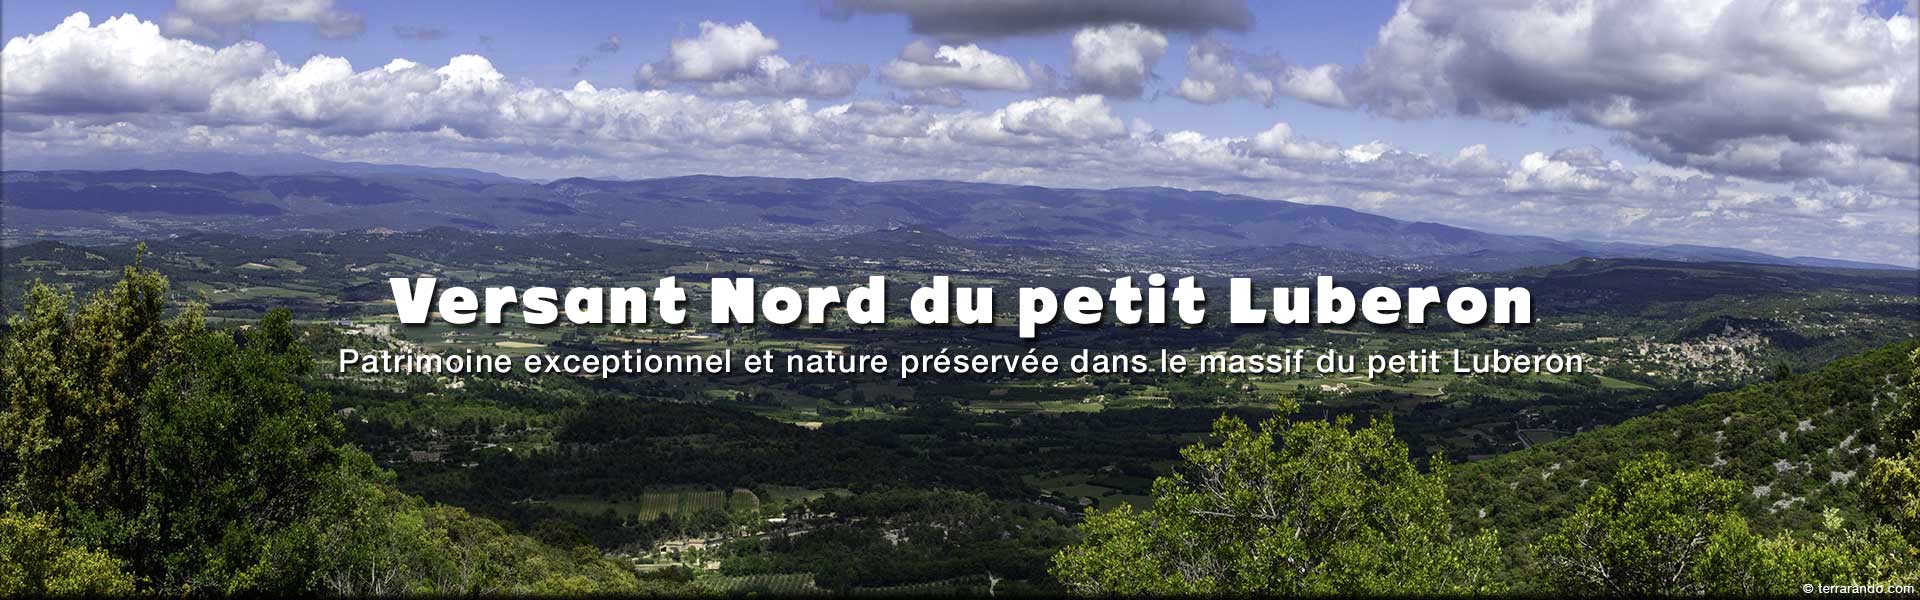 week-end randonnées sur le versant Nord du massif du petit Luberon dans le Vaucluse en Provence